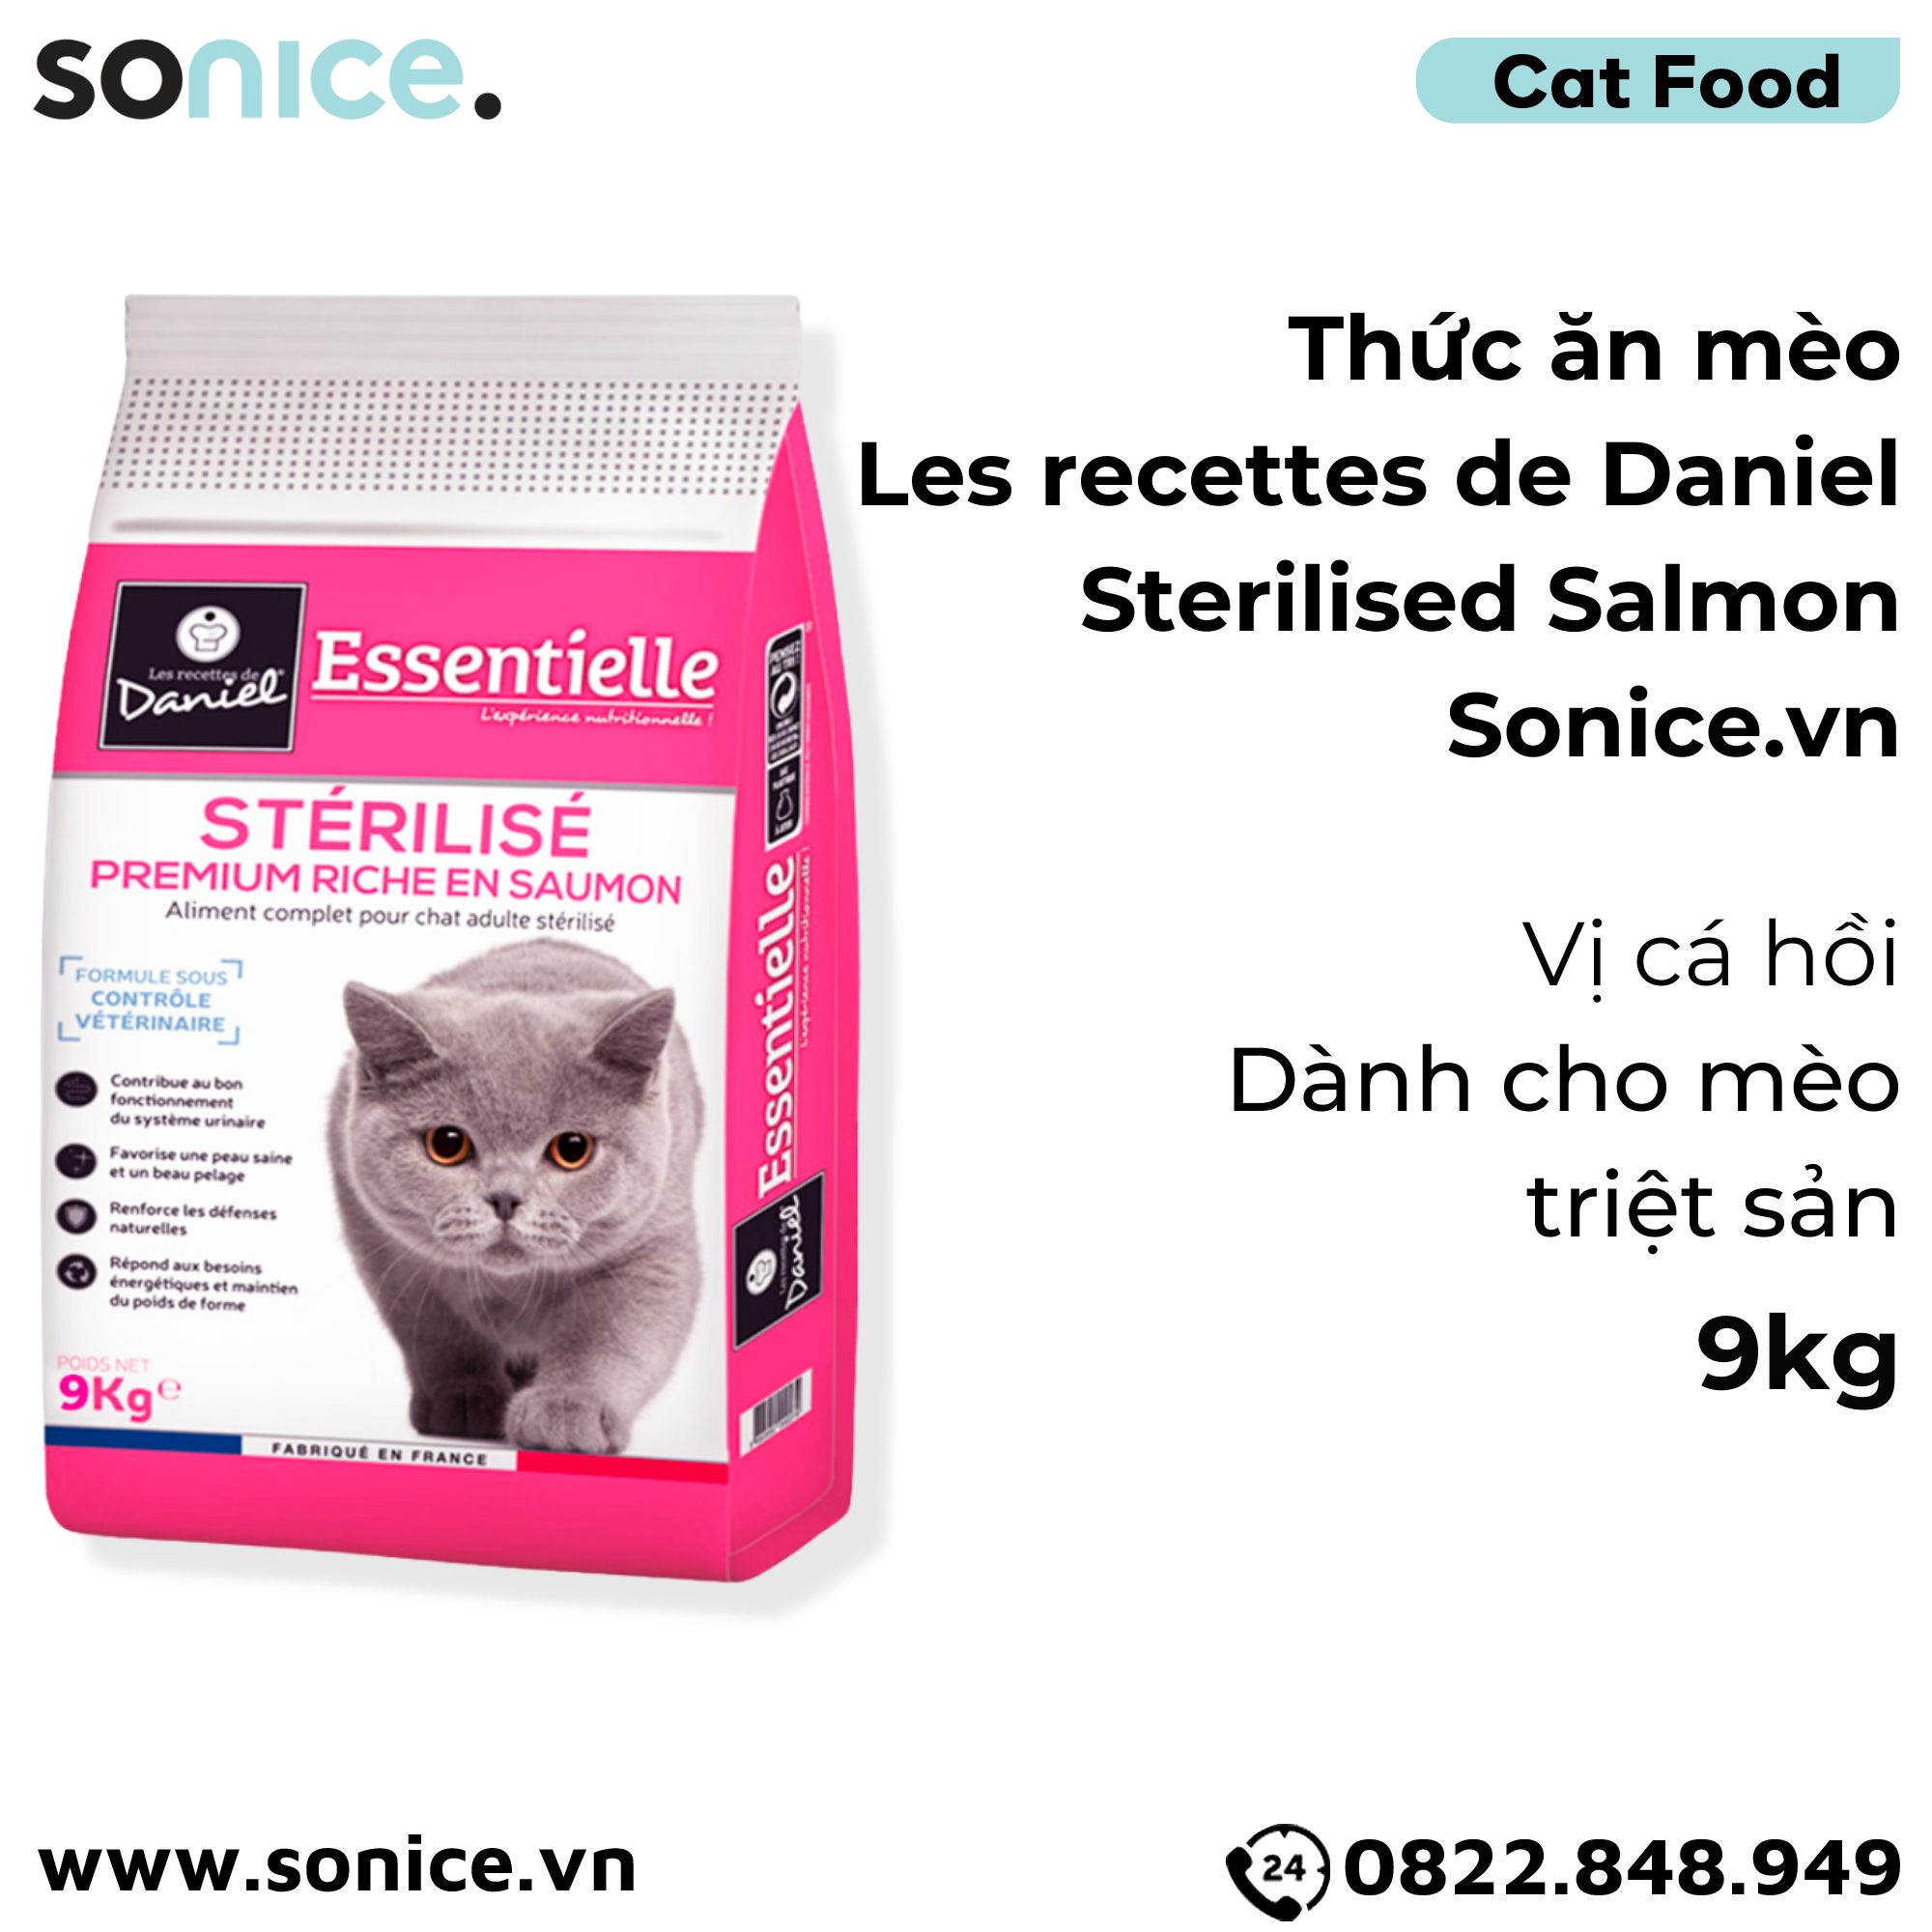  Thức ăn mèo Les recettes de Daniel Sterilised Salmon 9kg - Dành cho mèo triệt sản, vị cá hồi SONICE. 